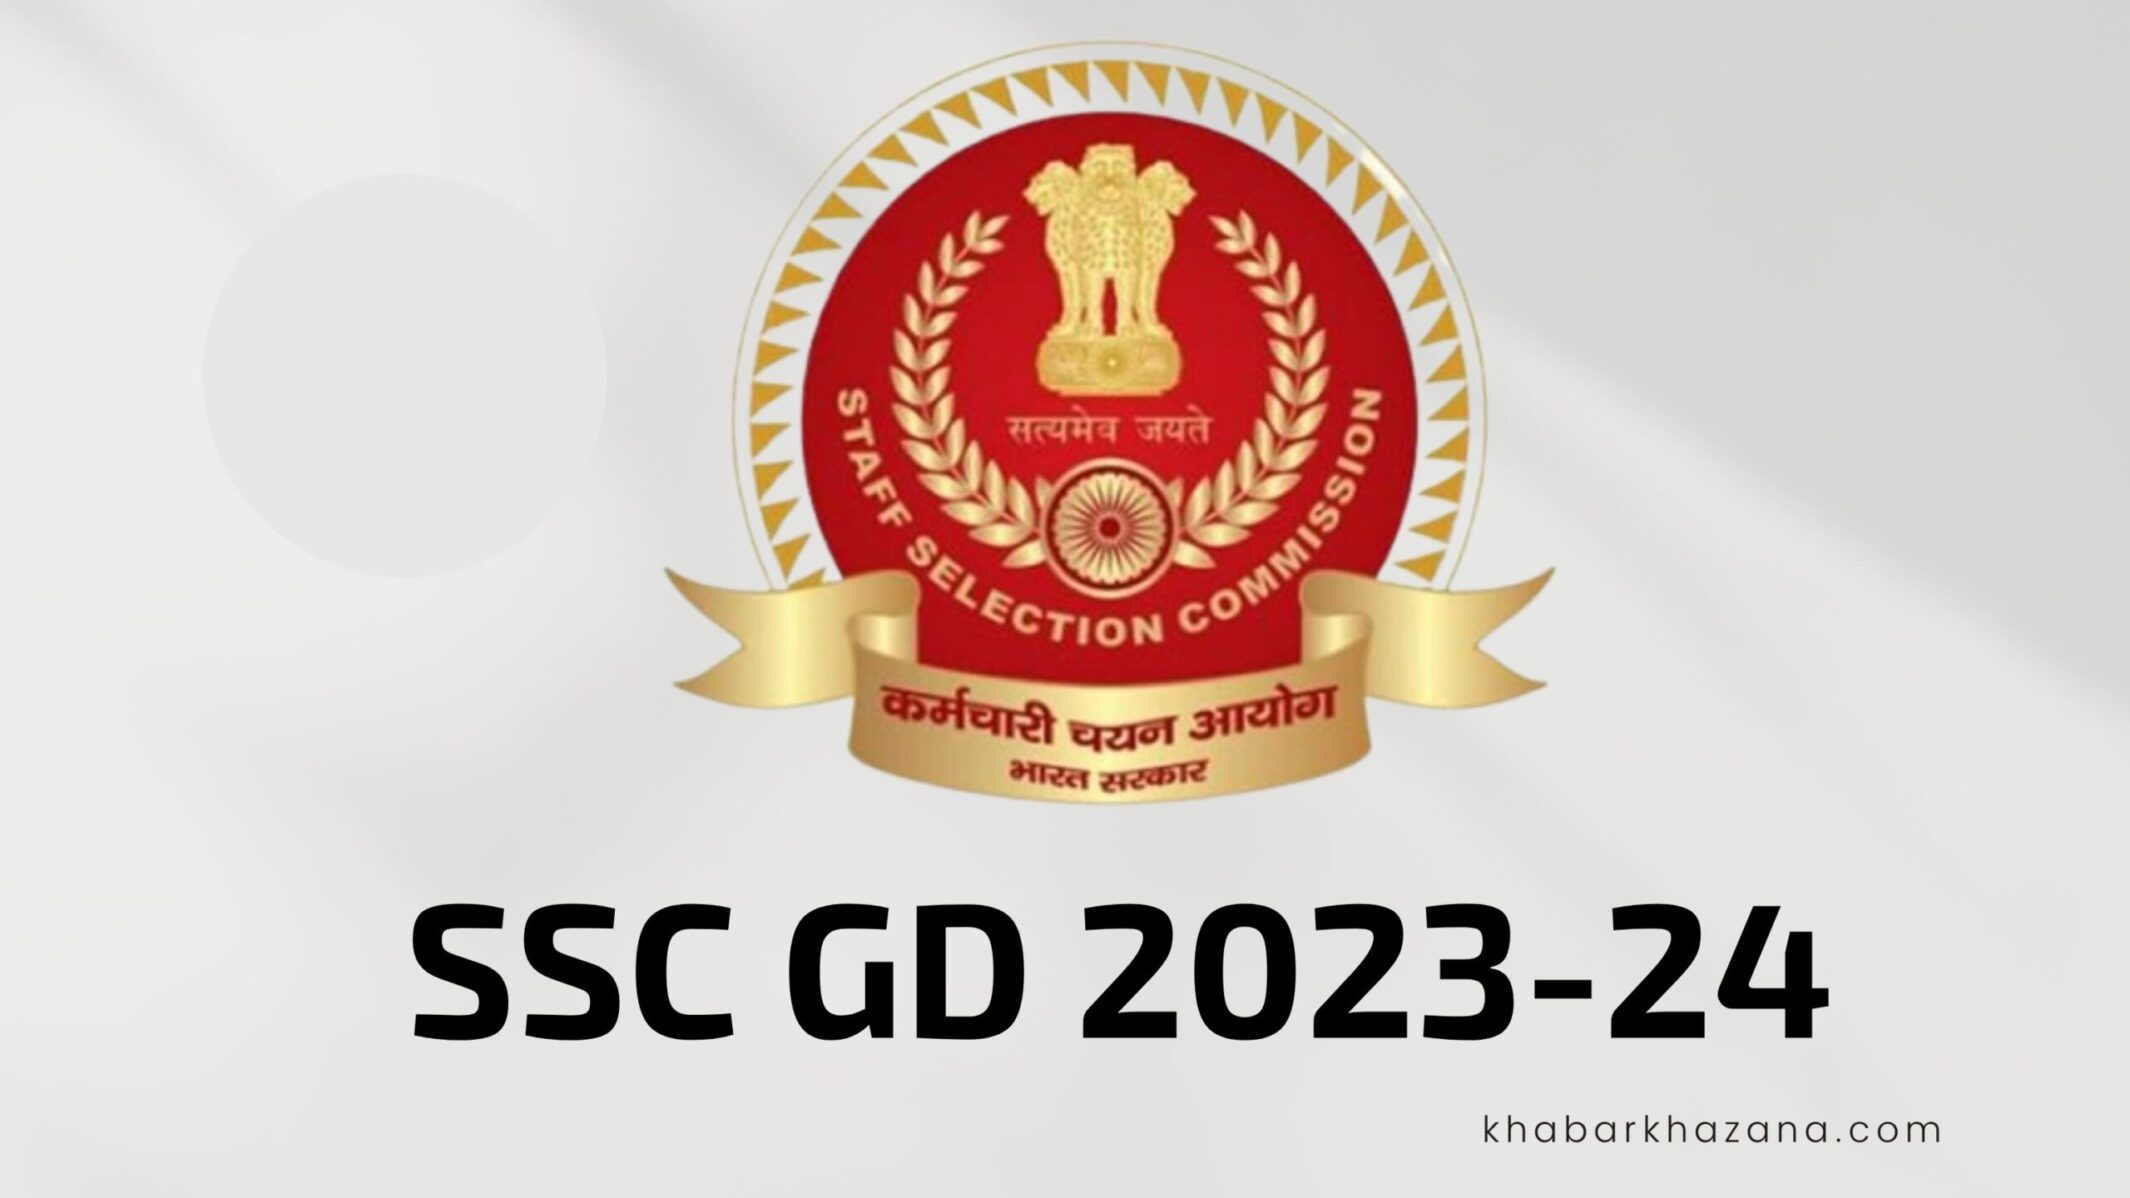 SSC GD 2023-24